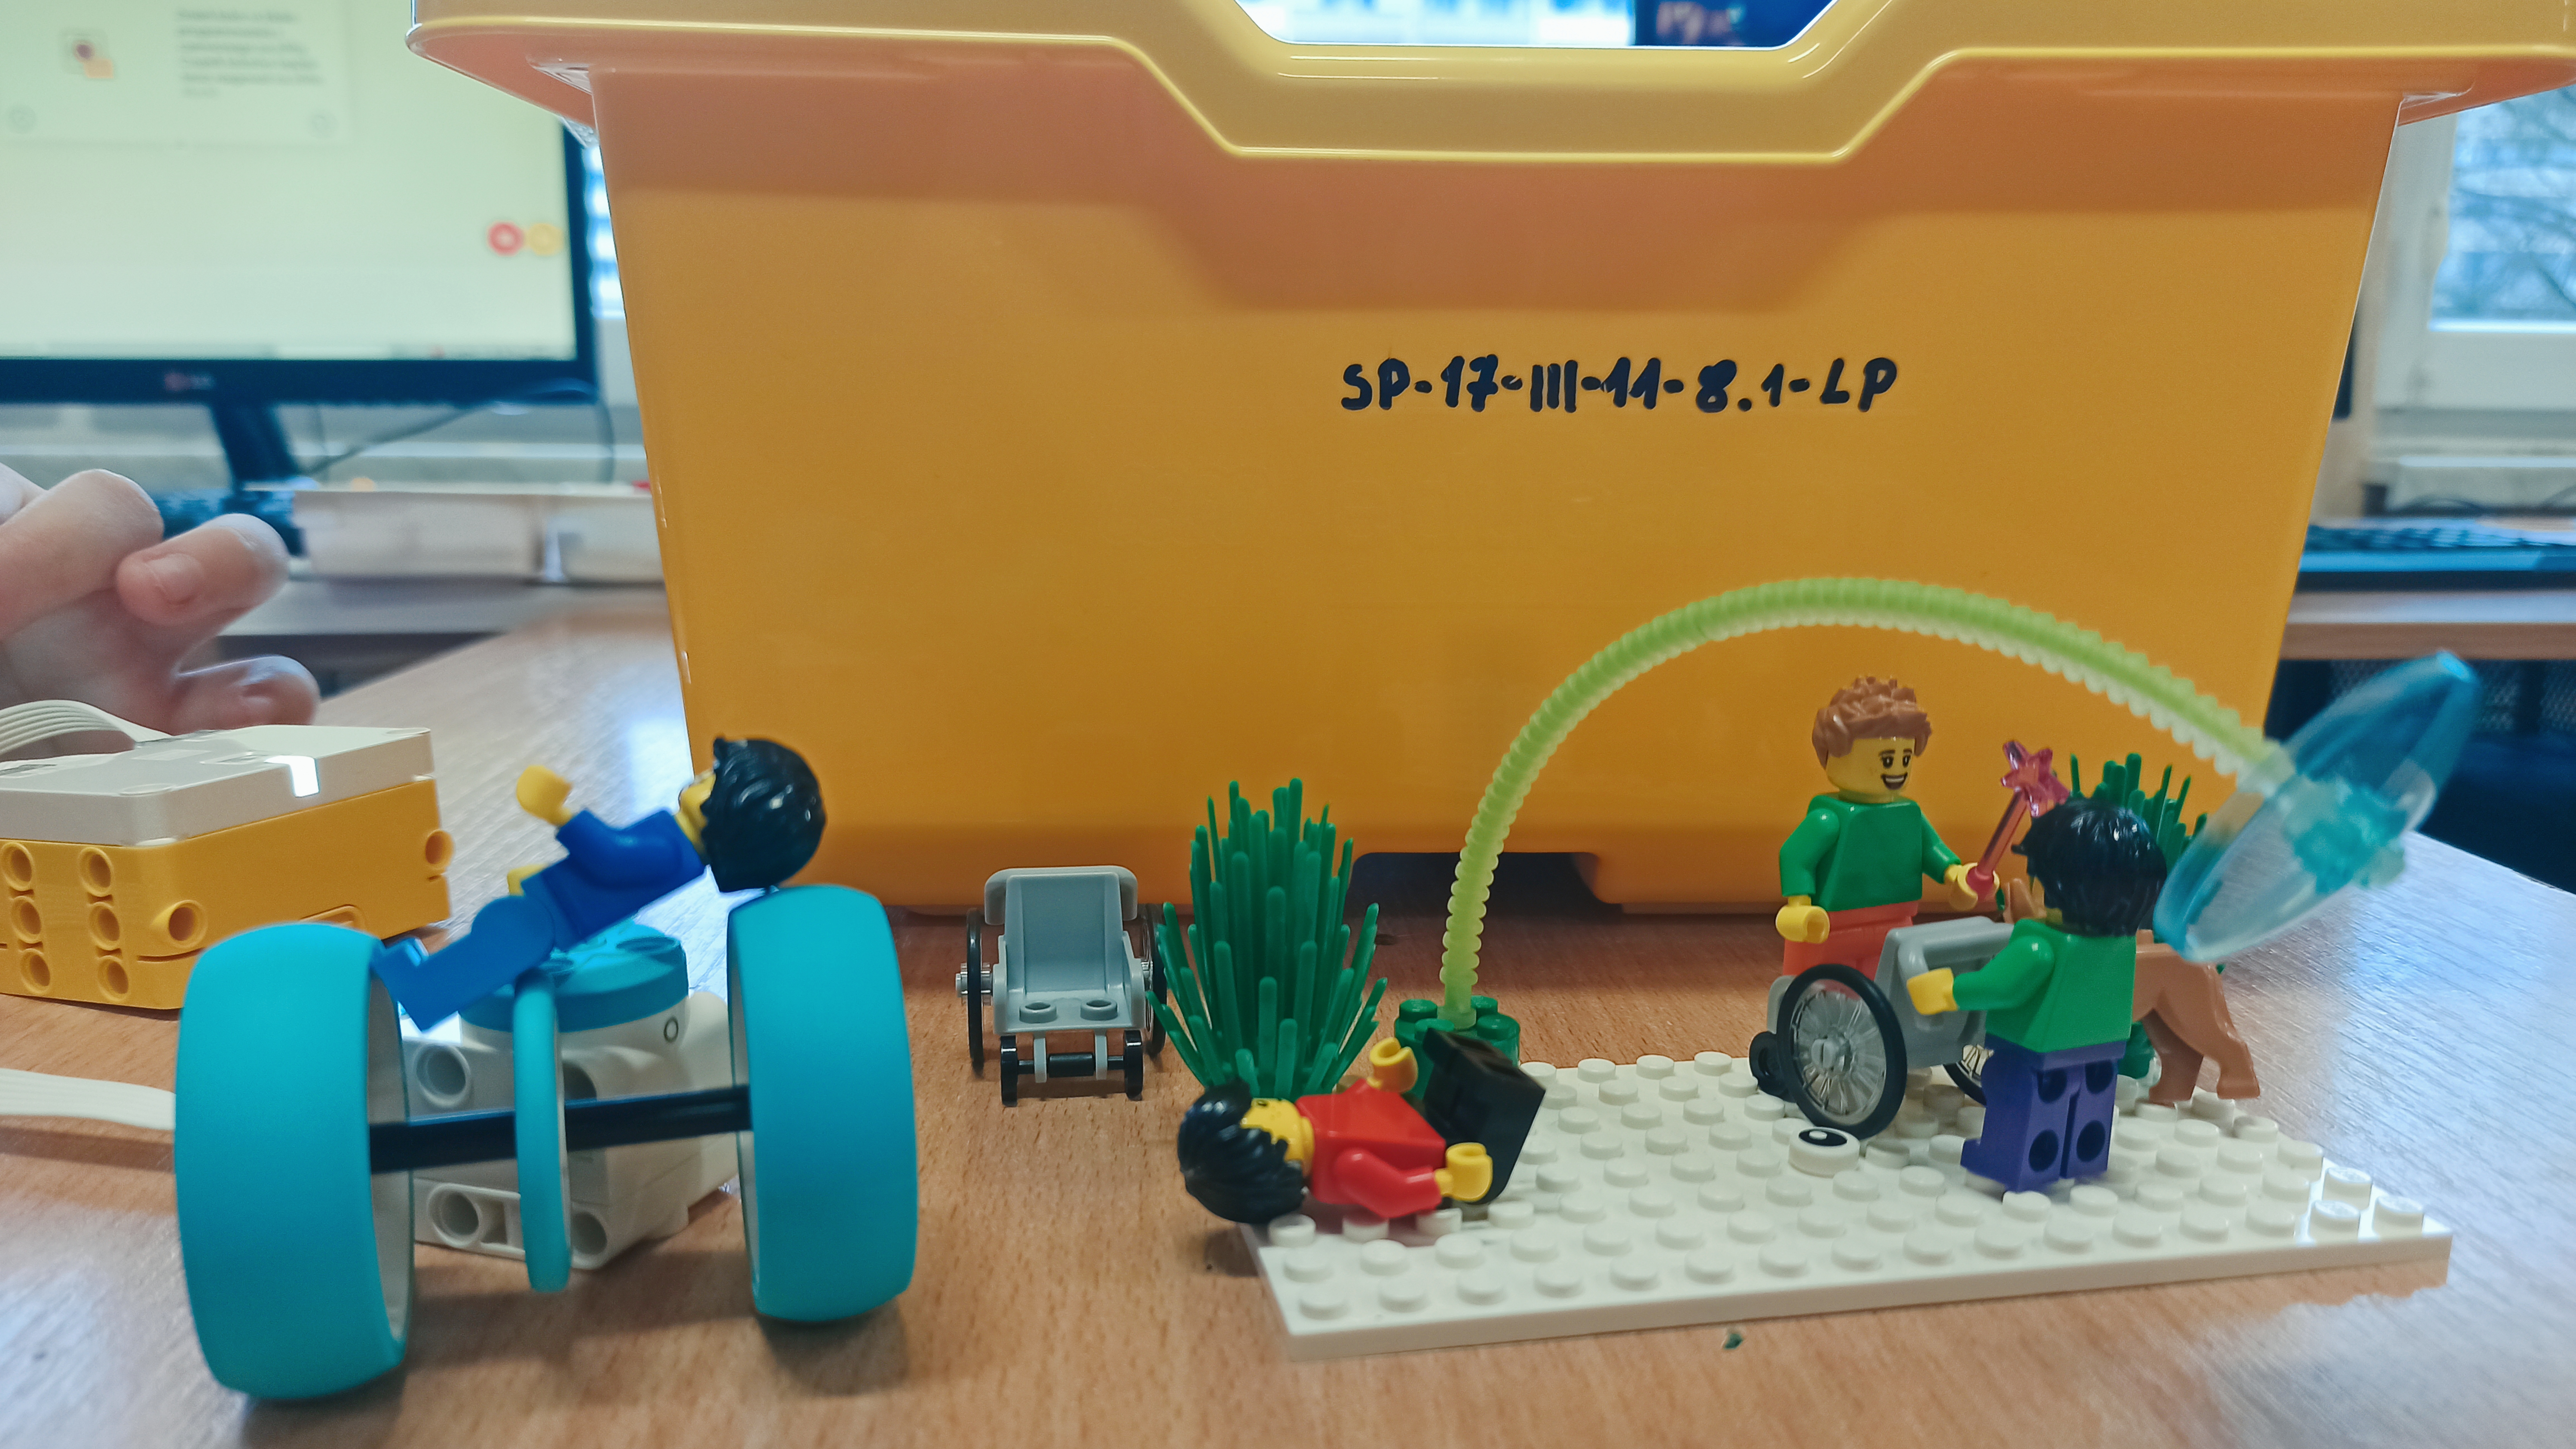 Zdjęcie przedstawia elementy zestawu LEGO SPIKE